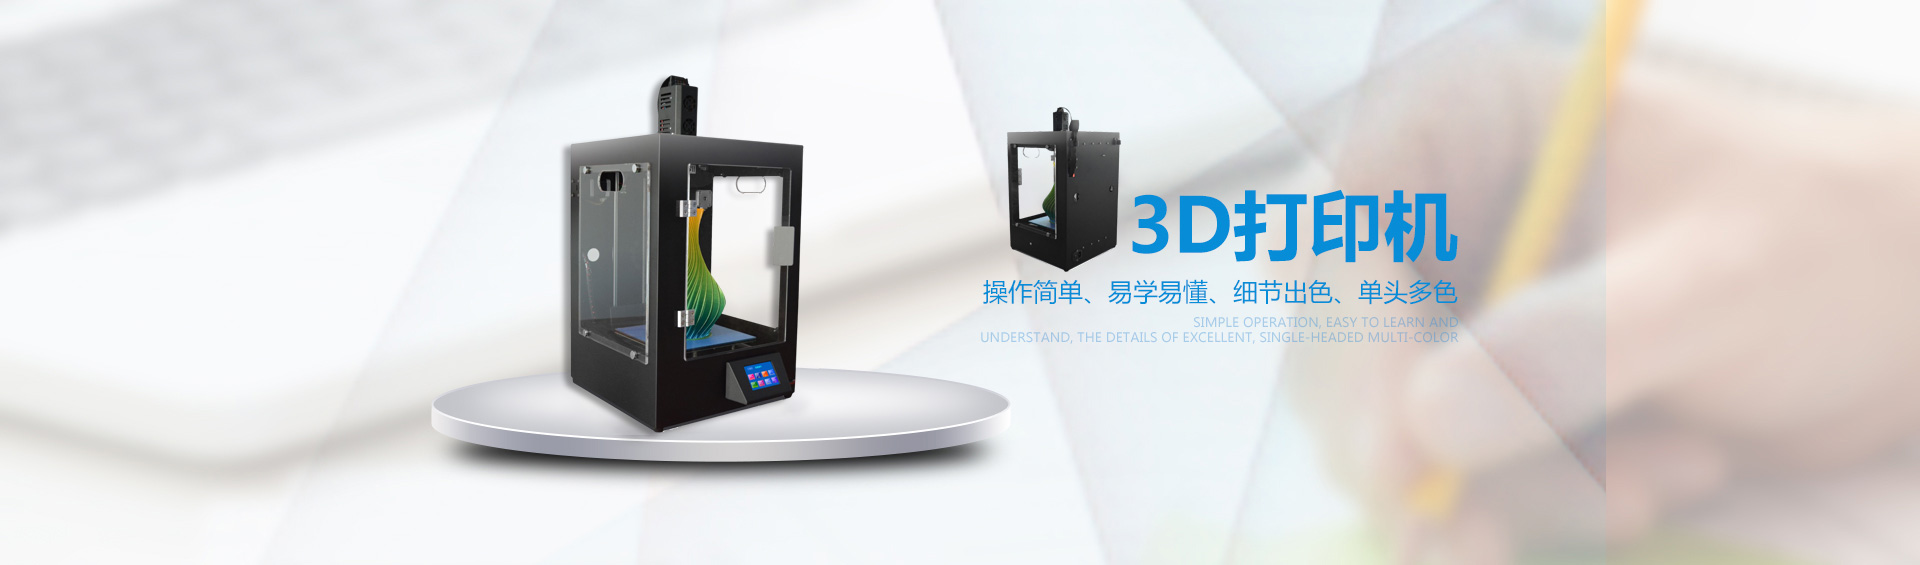 东莞3D打印机